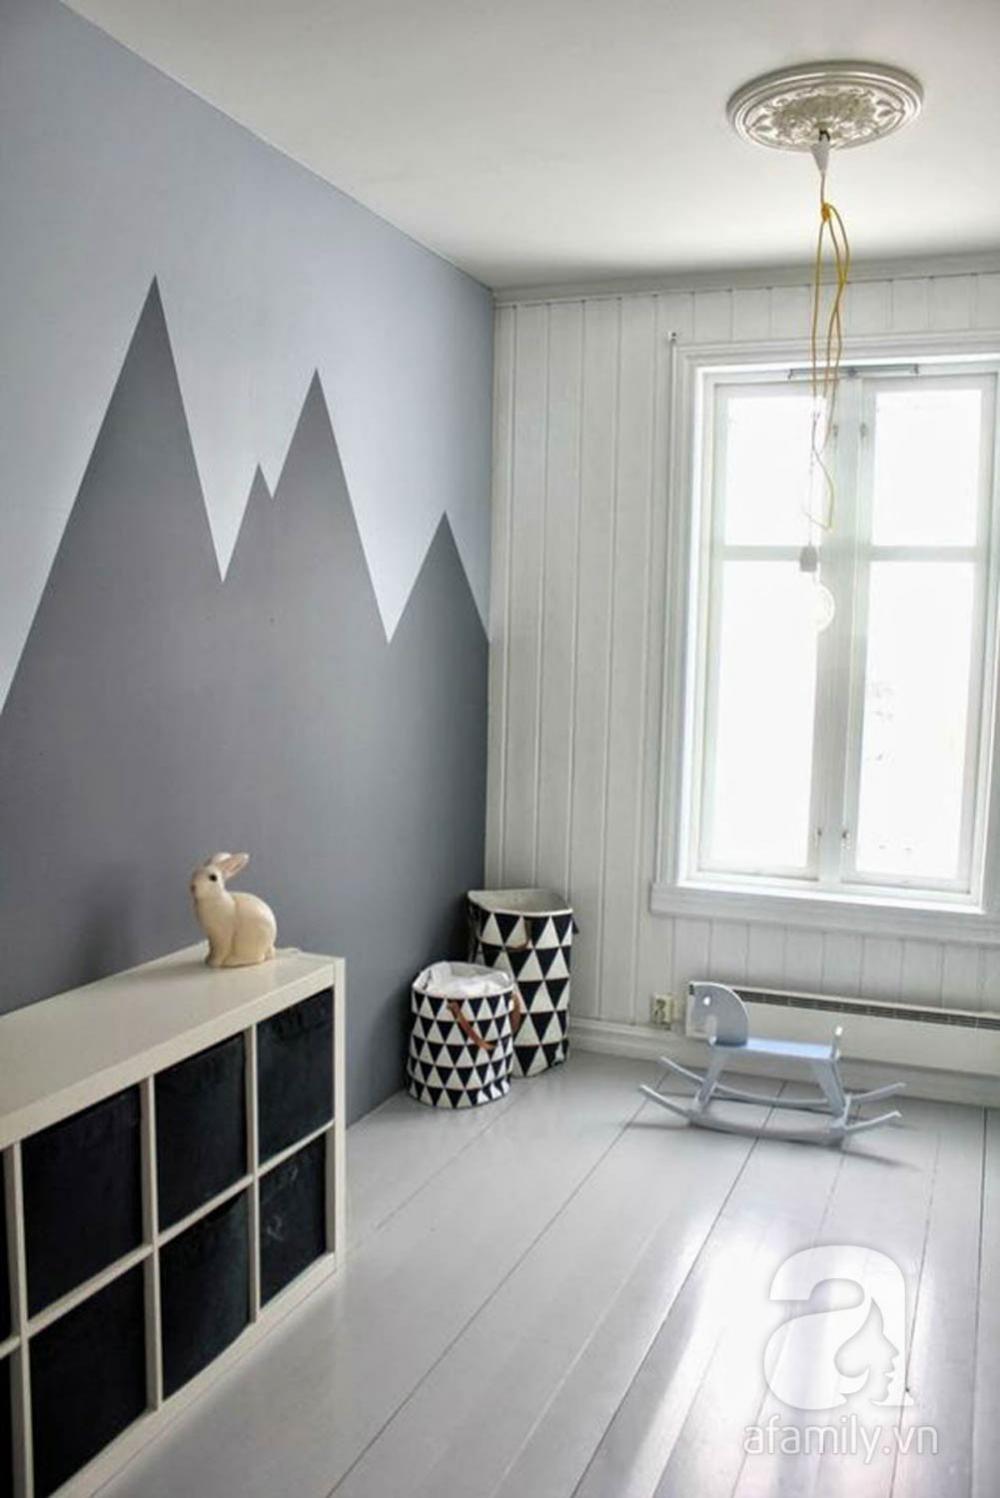 Sơn tường hoặc sử dụng giấy dán những hình ngộ nghĩnh để tạo điểm nhấn  ​cũng như làm căn phòng sinh động hơn